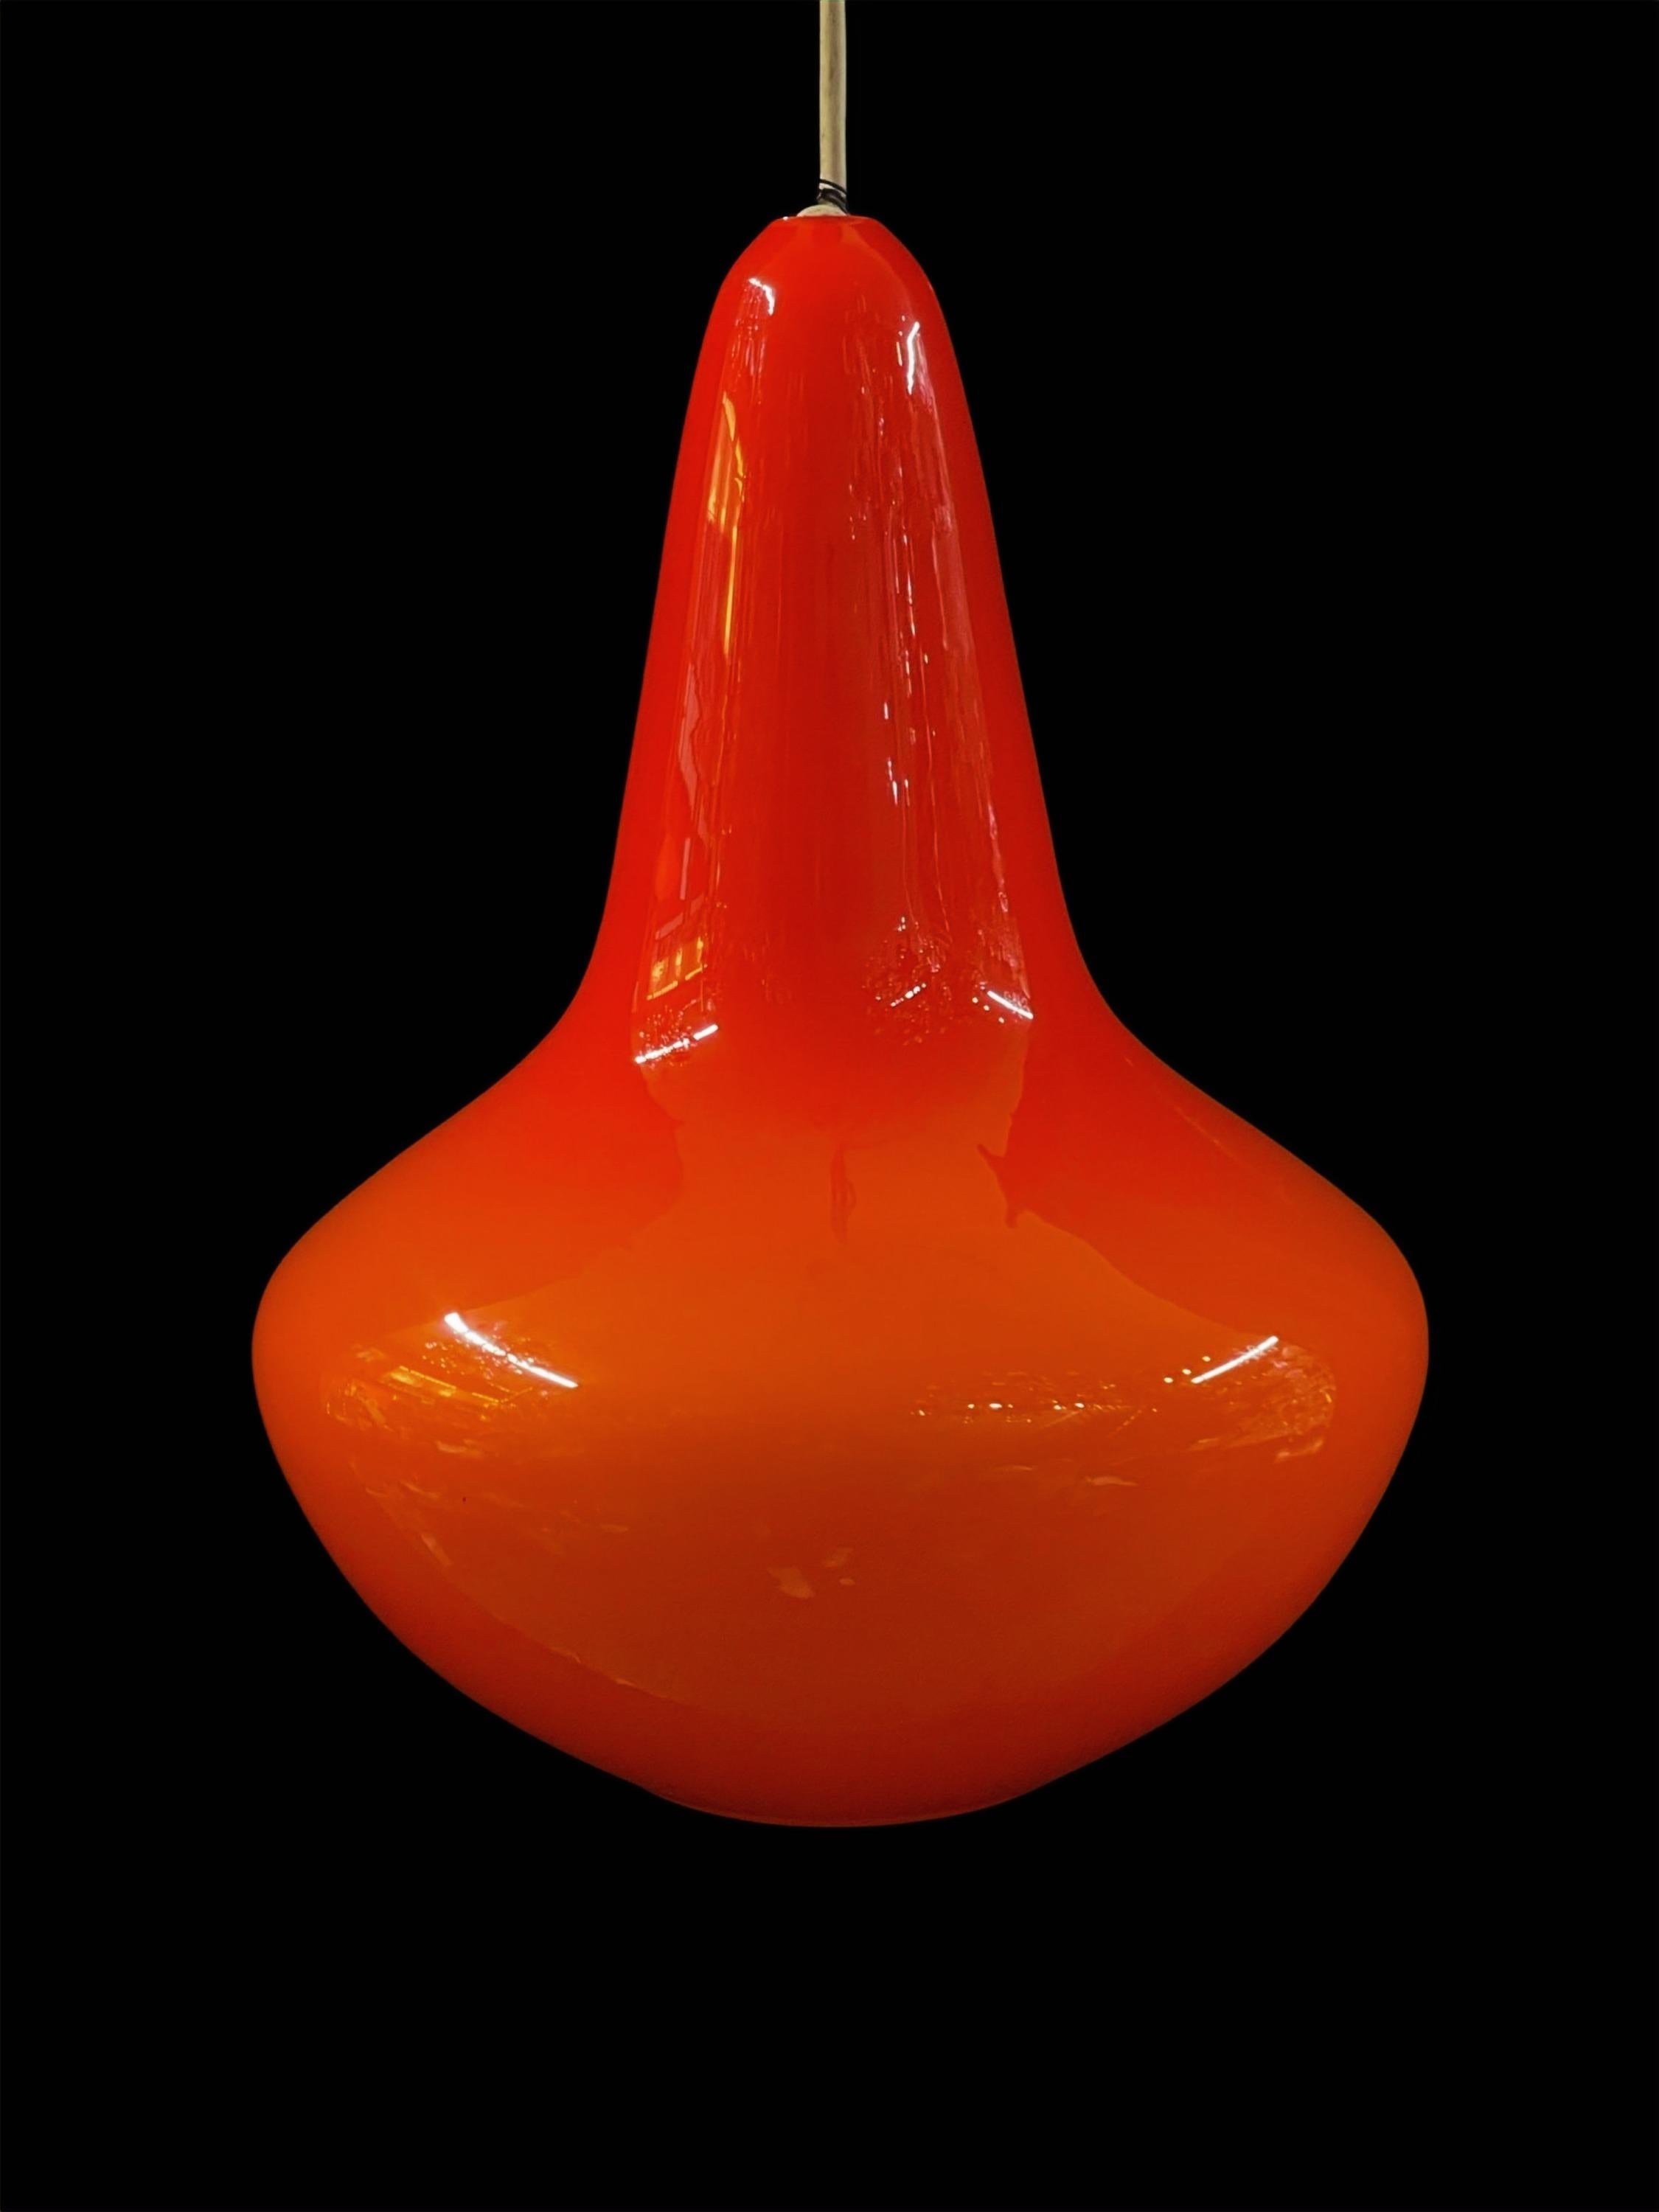 Voici notre superbe lampe suspendue en verre orange audacieux Vintage, une pièce intemporelle qui rappelle l'époque vibrante des années 1970.

D'une teinte orange riche et lumineuse, cette lampe suspendue est non seulement dans un état impeccable,